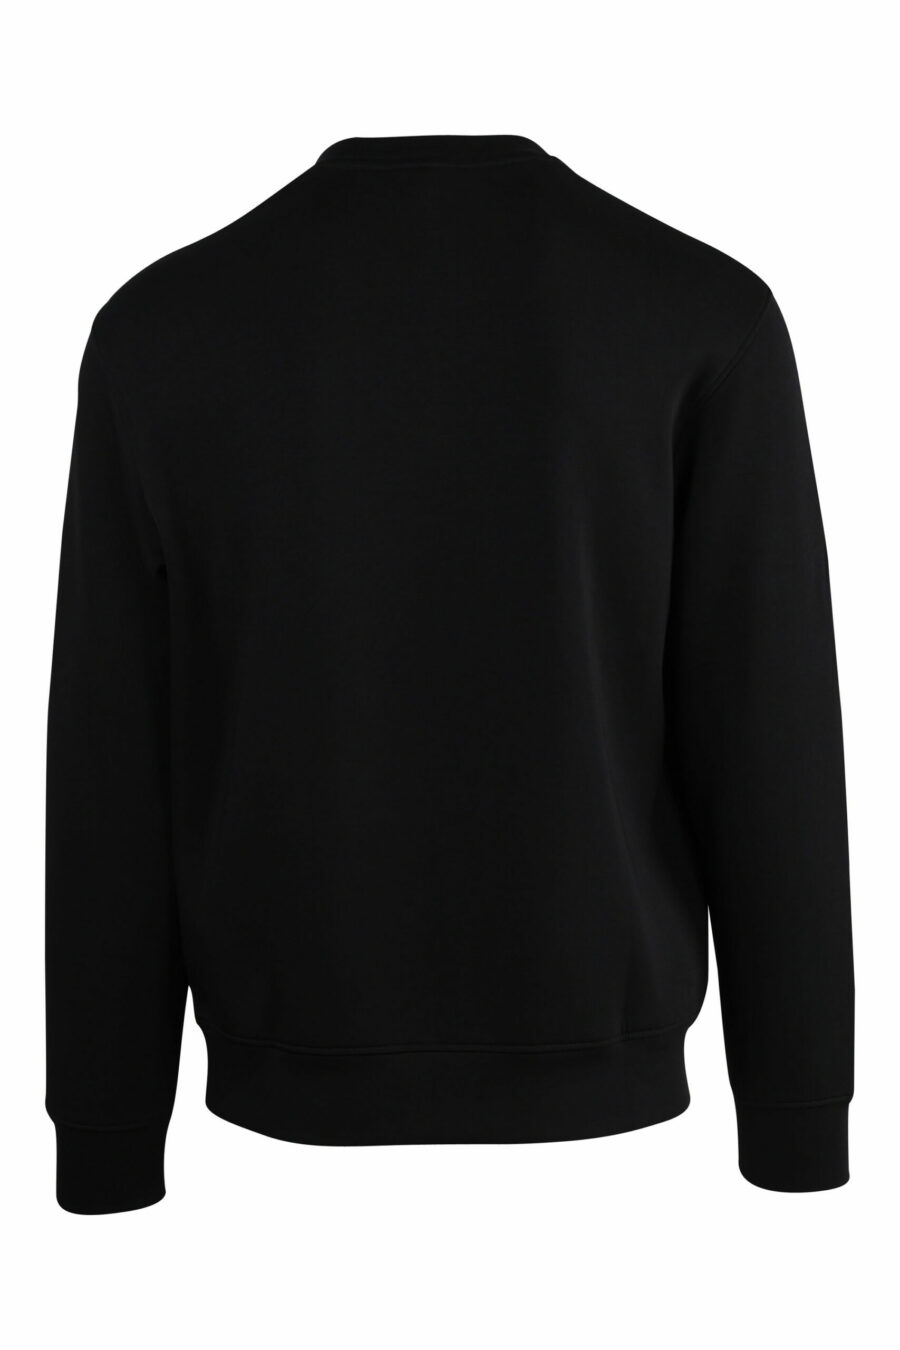 Sweatshirt noir avec maxilogo aigle - 8057767552367 à l'échelle